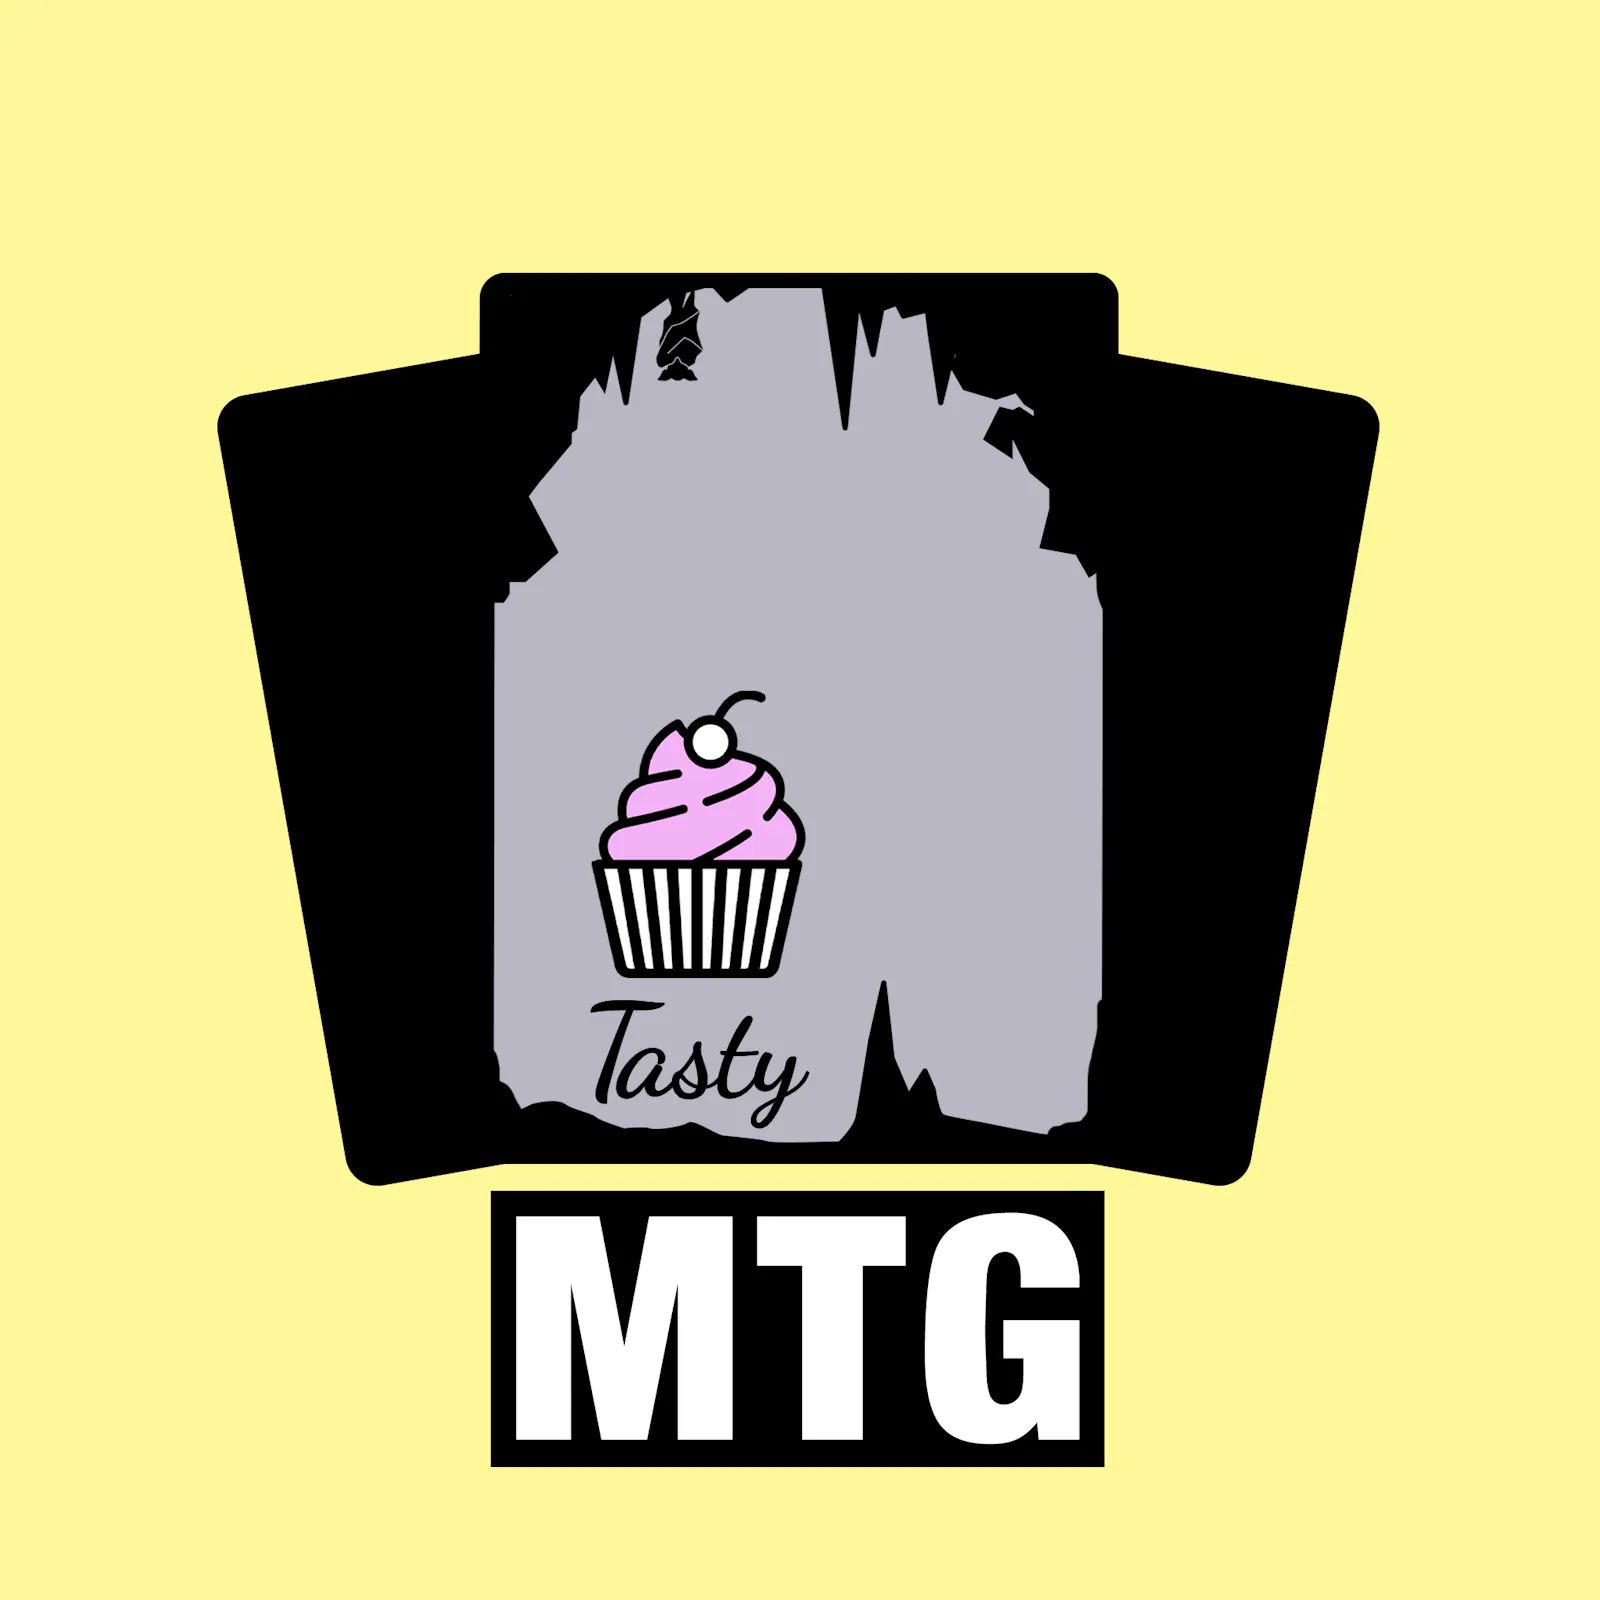 Das Cover zur aktuellen Tasty-MTG-Folge: Der Tasty-Muffin ist in einer dunklen Höhle ganz allein.